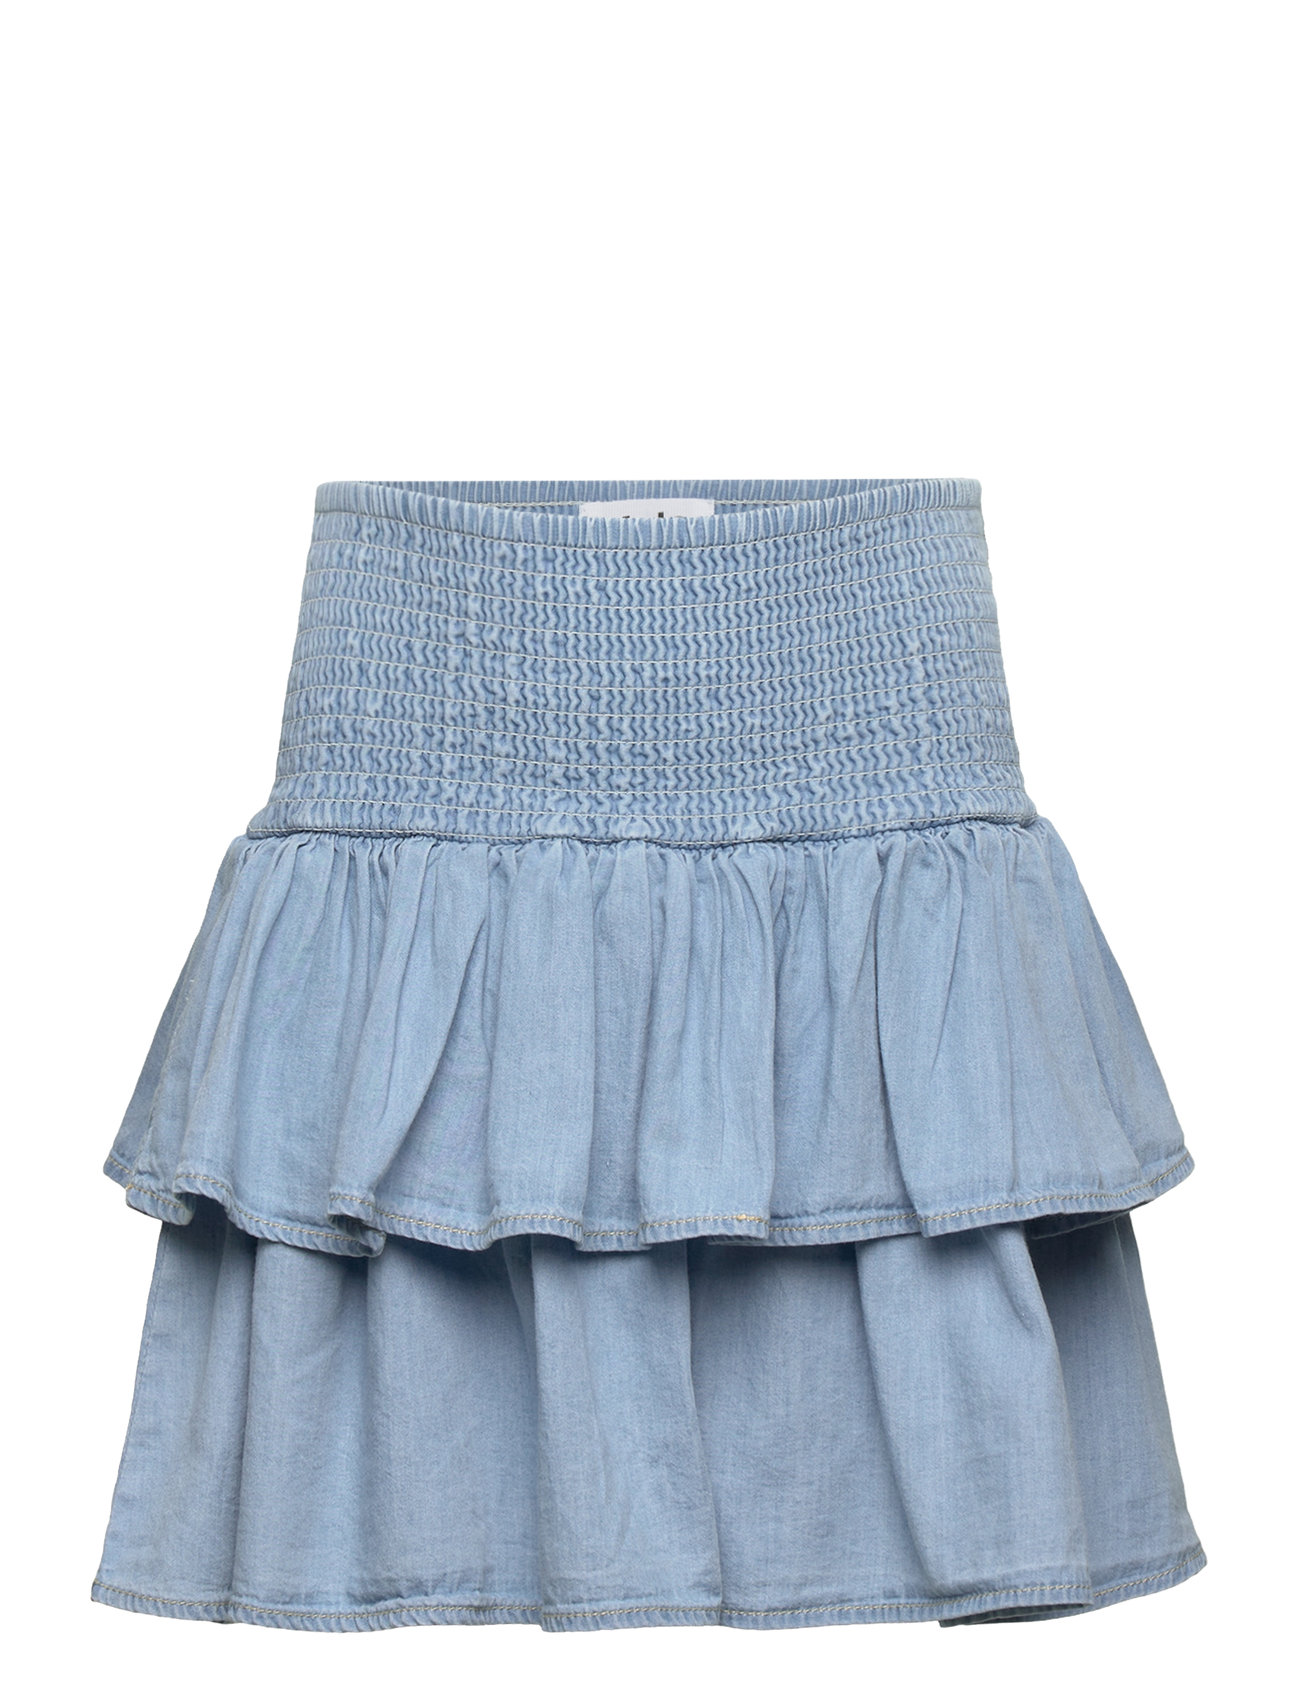 Bonita Dresses & Skirts Skirts Midi Skirts Blue Molo